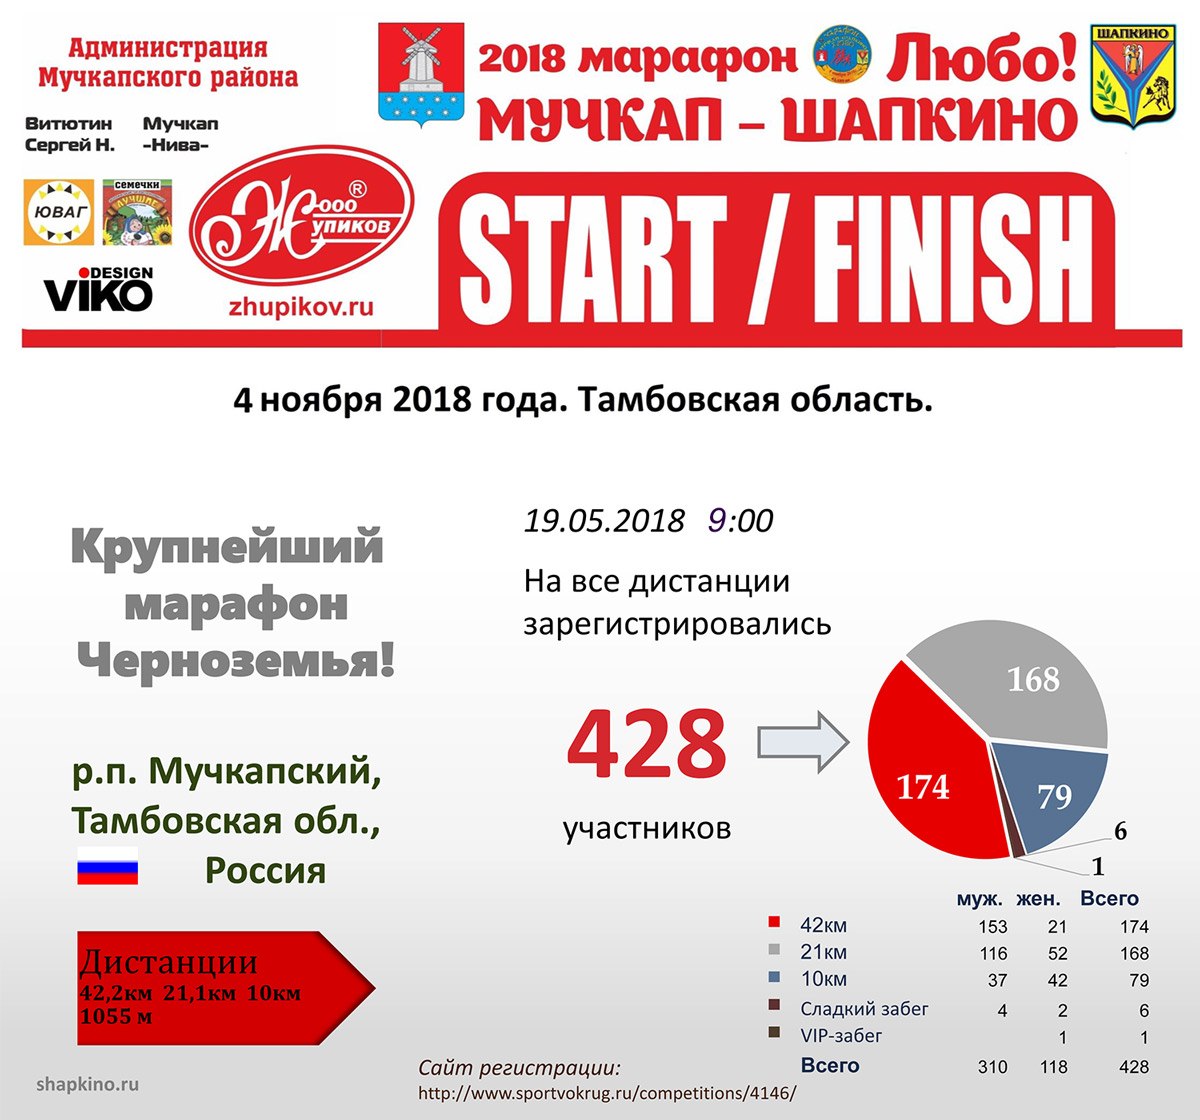 Регистрация на 7-й марафон «Мучкап-Шапкино – Любо!»